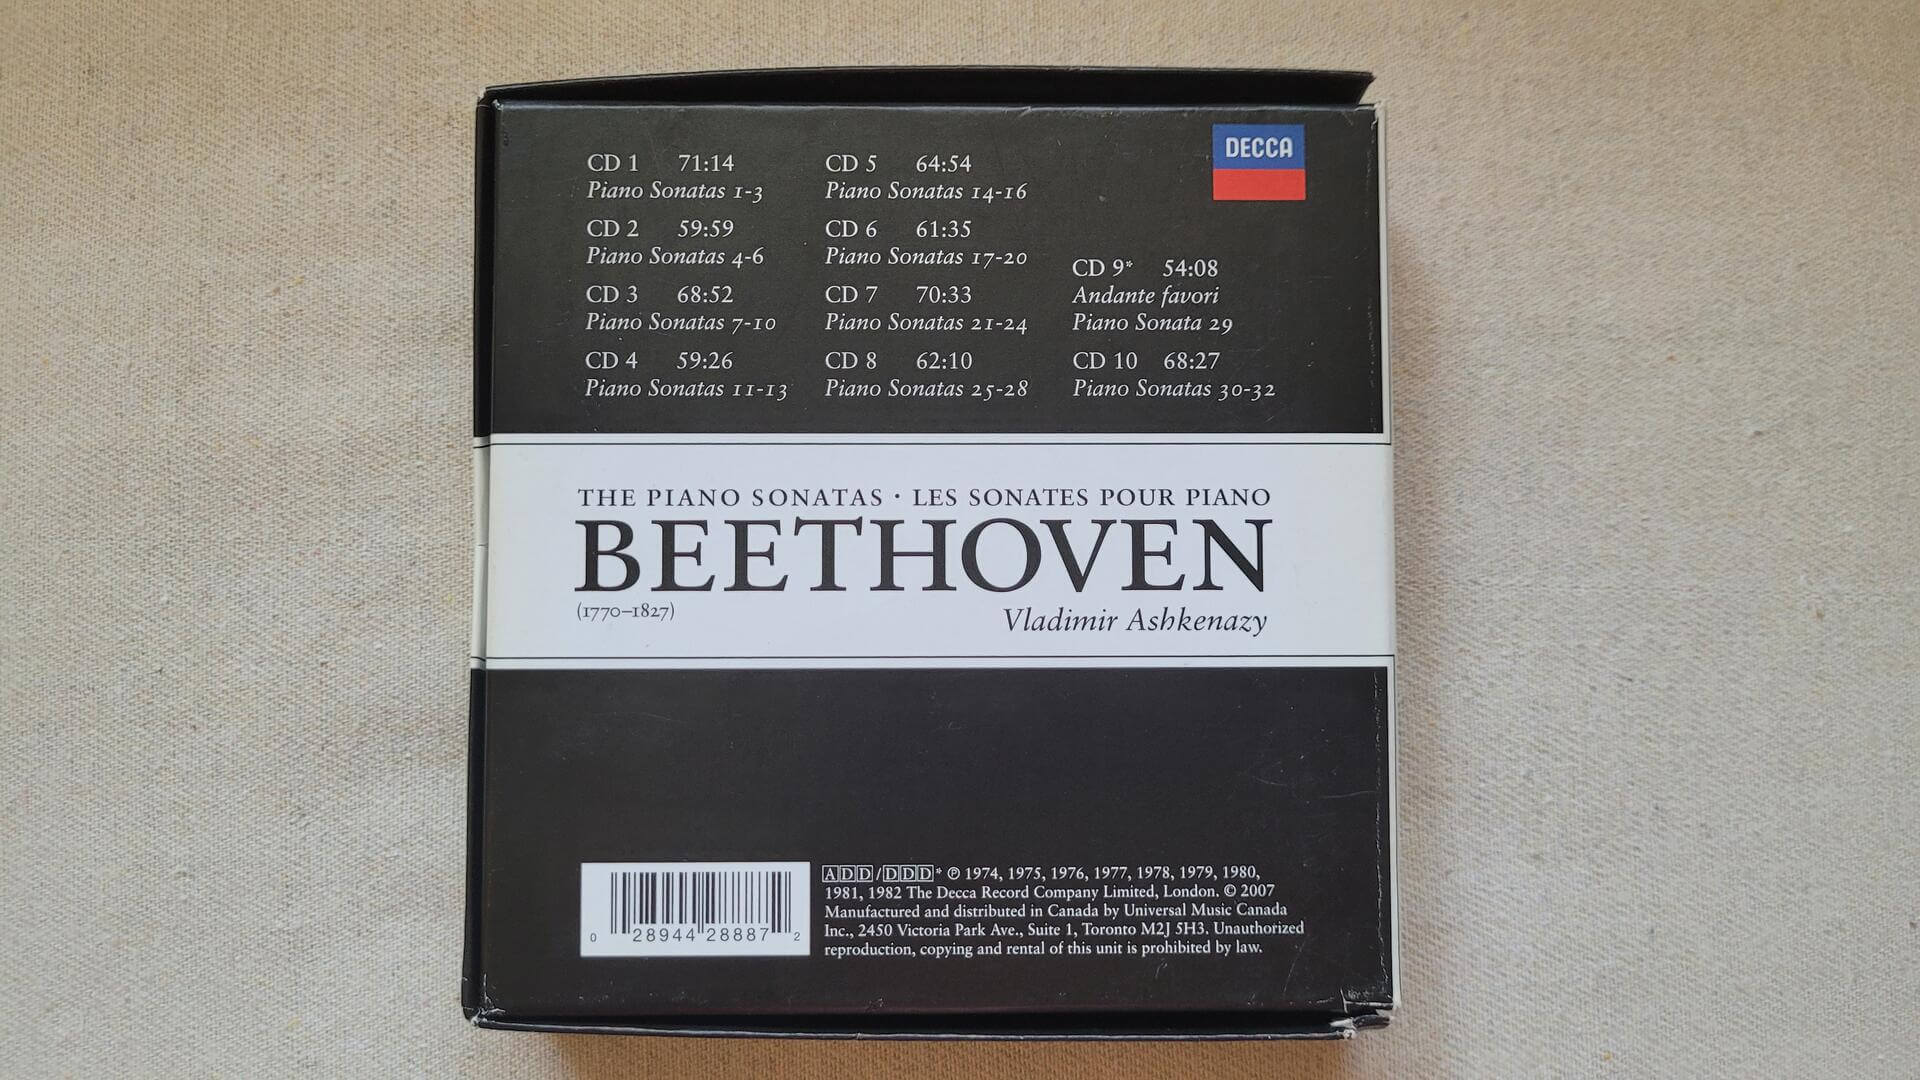 Decca Beethoven The Piano Sonatas by V Ashkenazy 10 CD Box Set - All 32 sonatas collectible classical piano music compact disks set